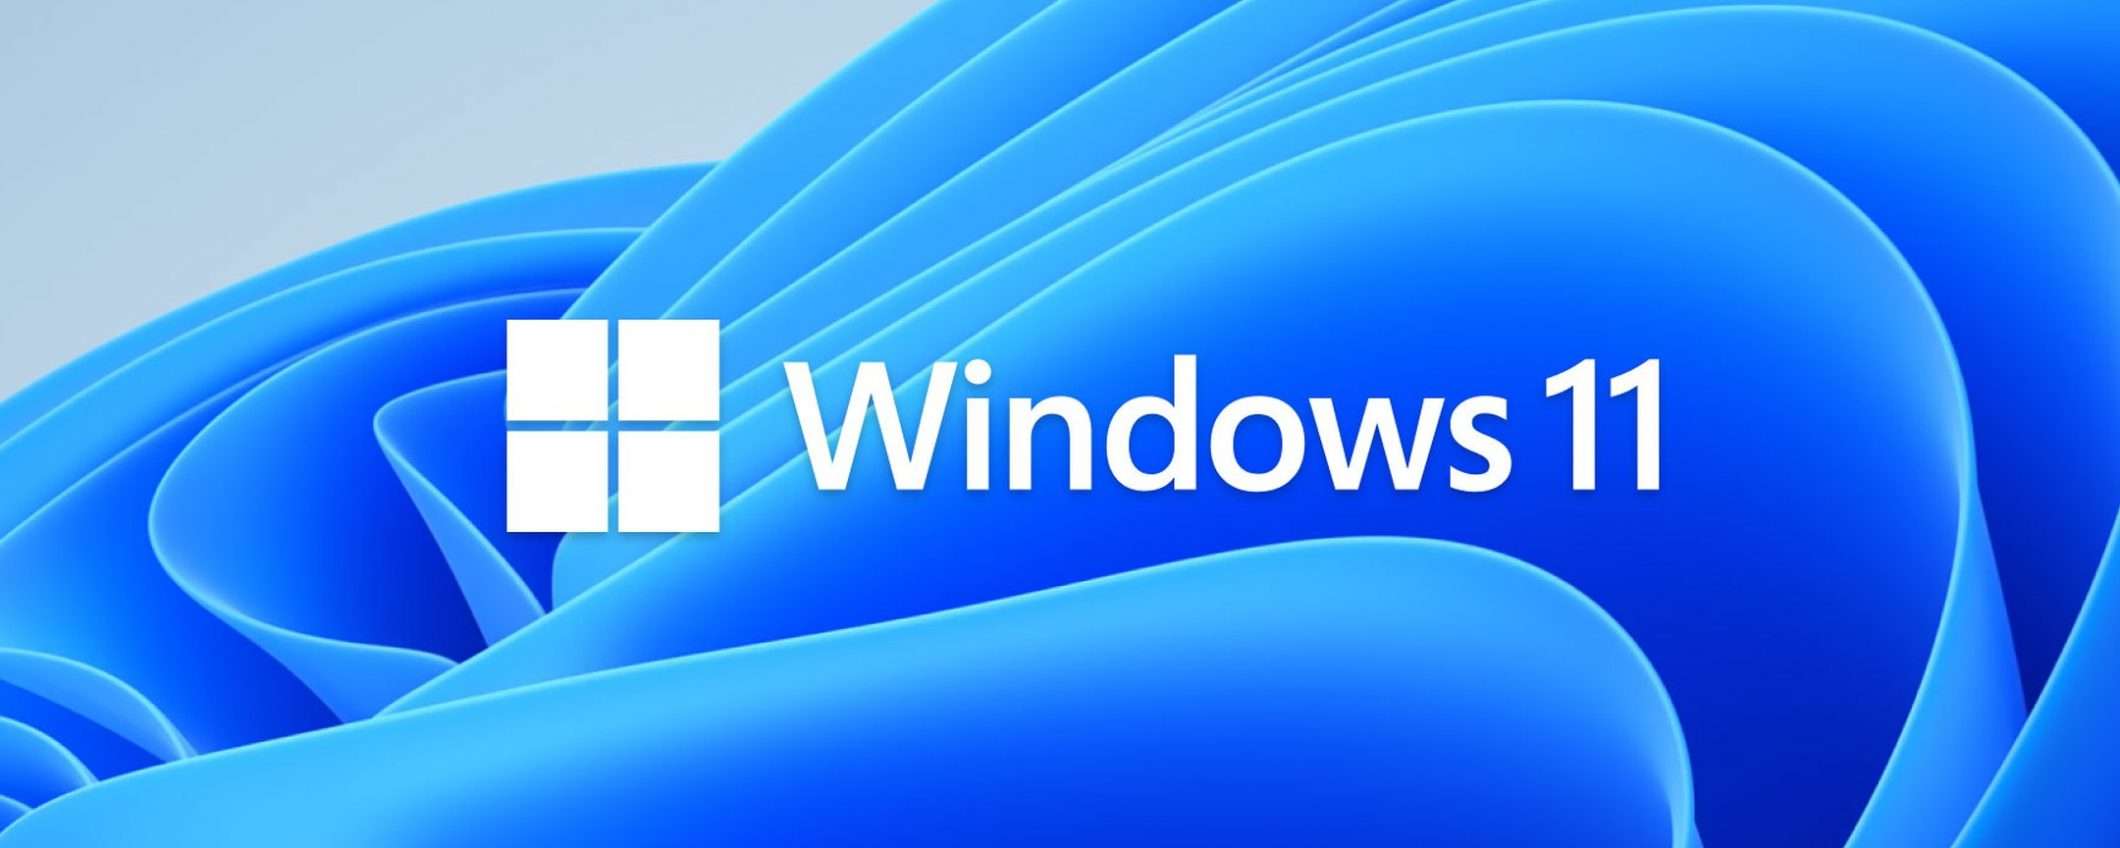 Windows 11: scoperta la prima vulnerabilità